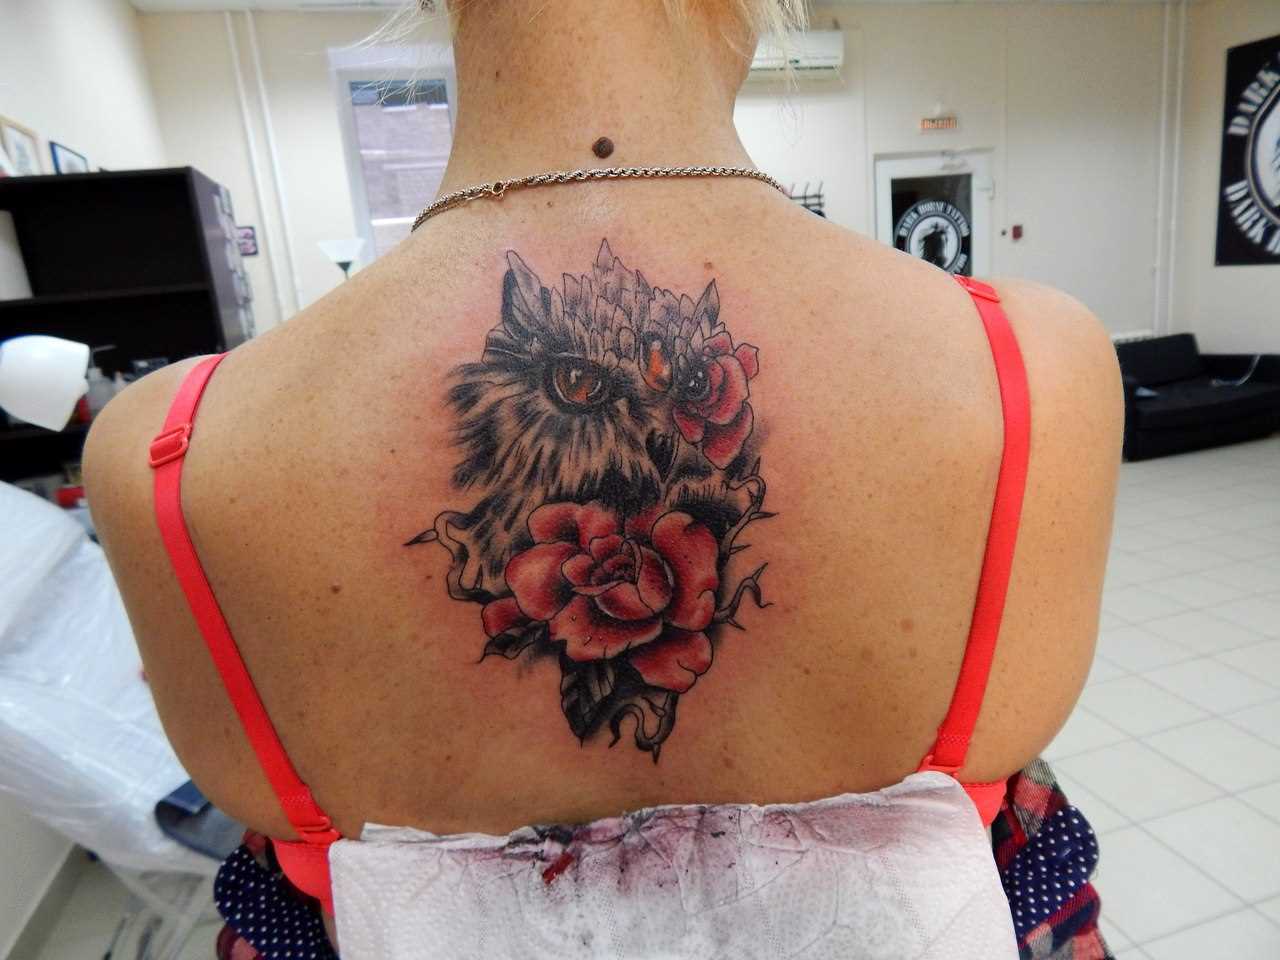 A tatuagem nas costas de uma menina - a coruja e rosas